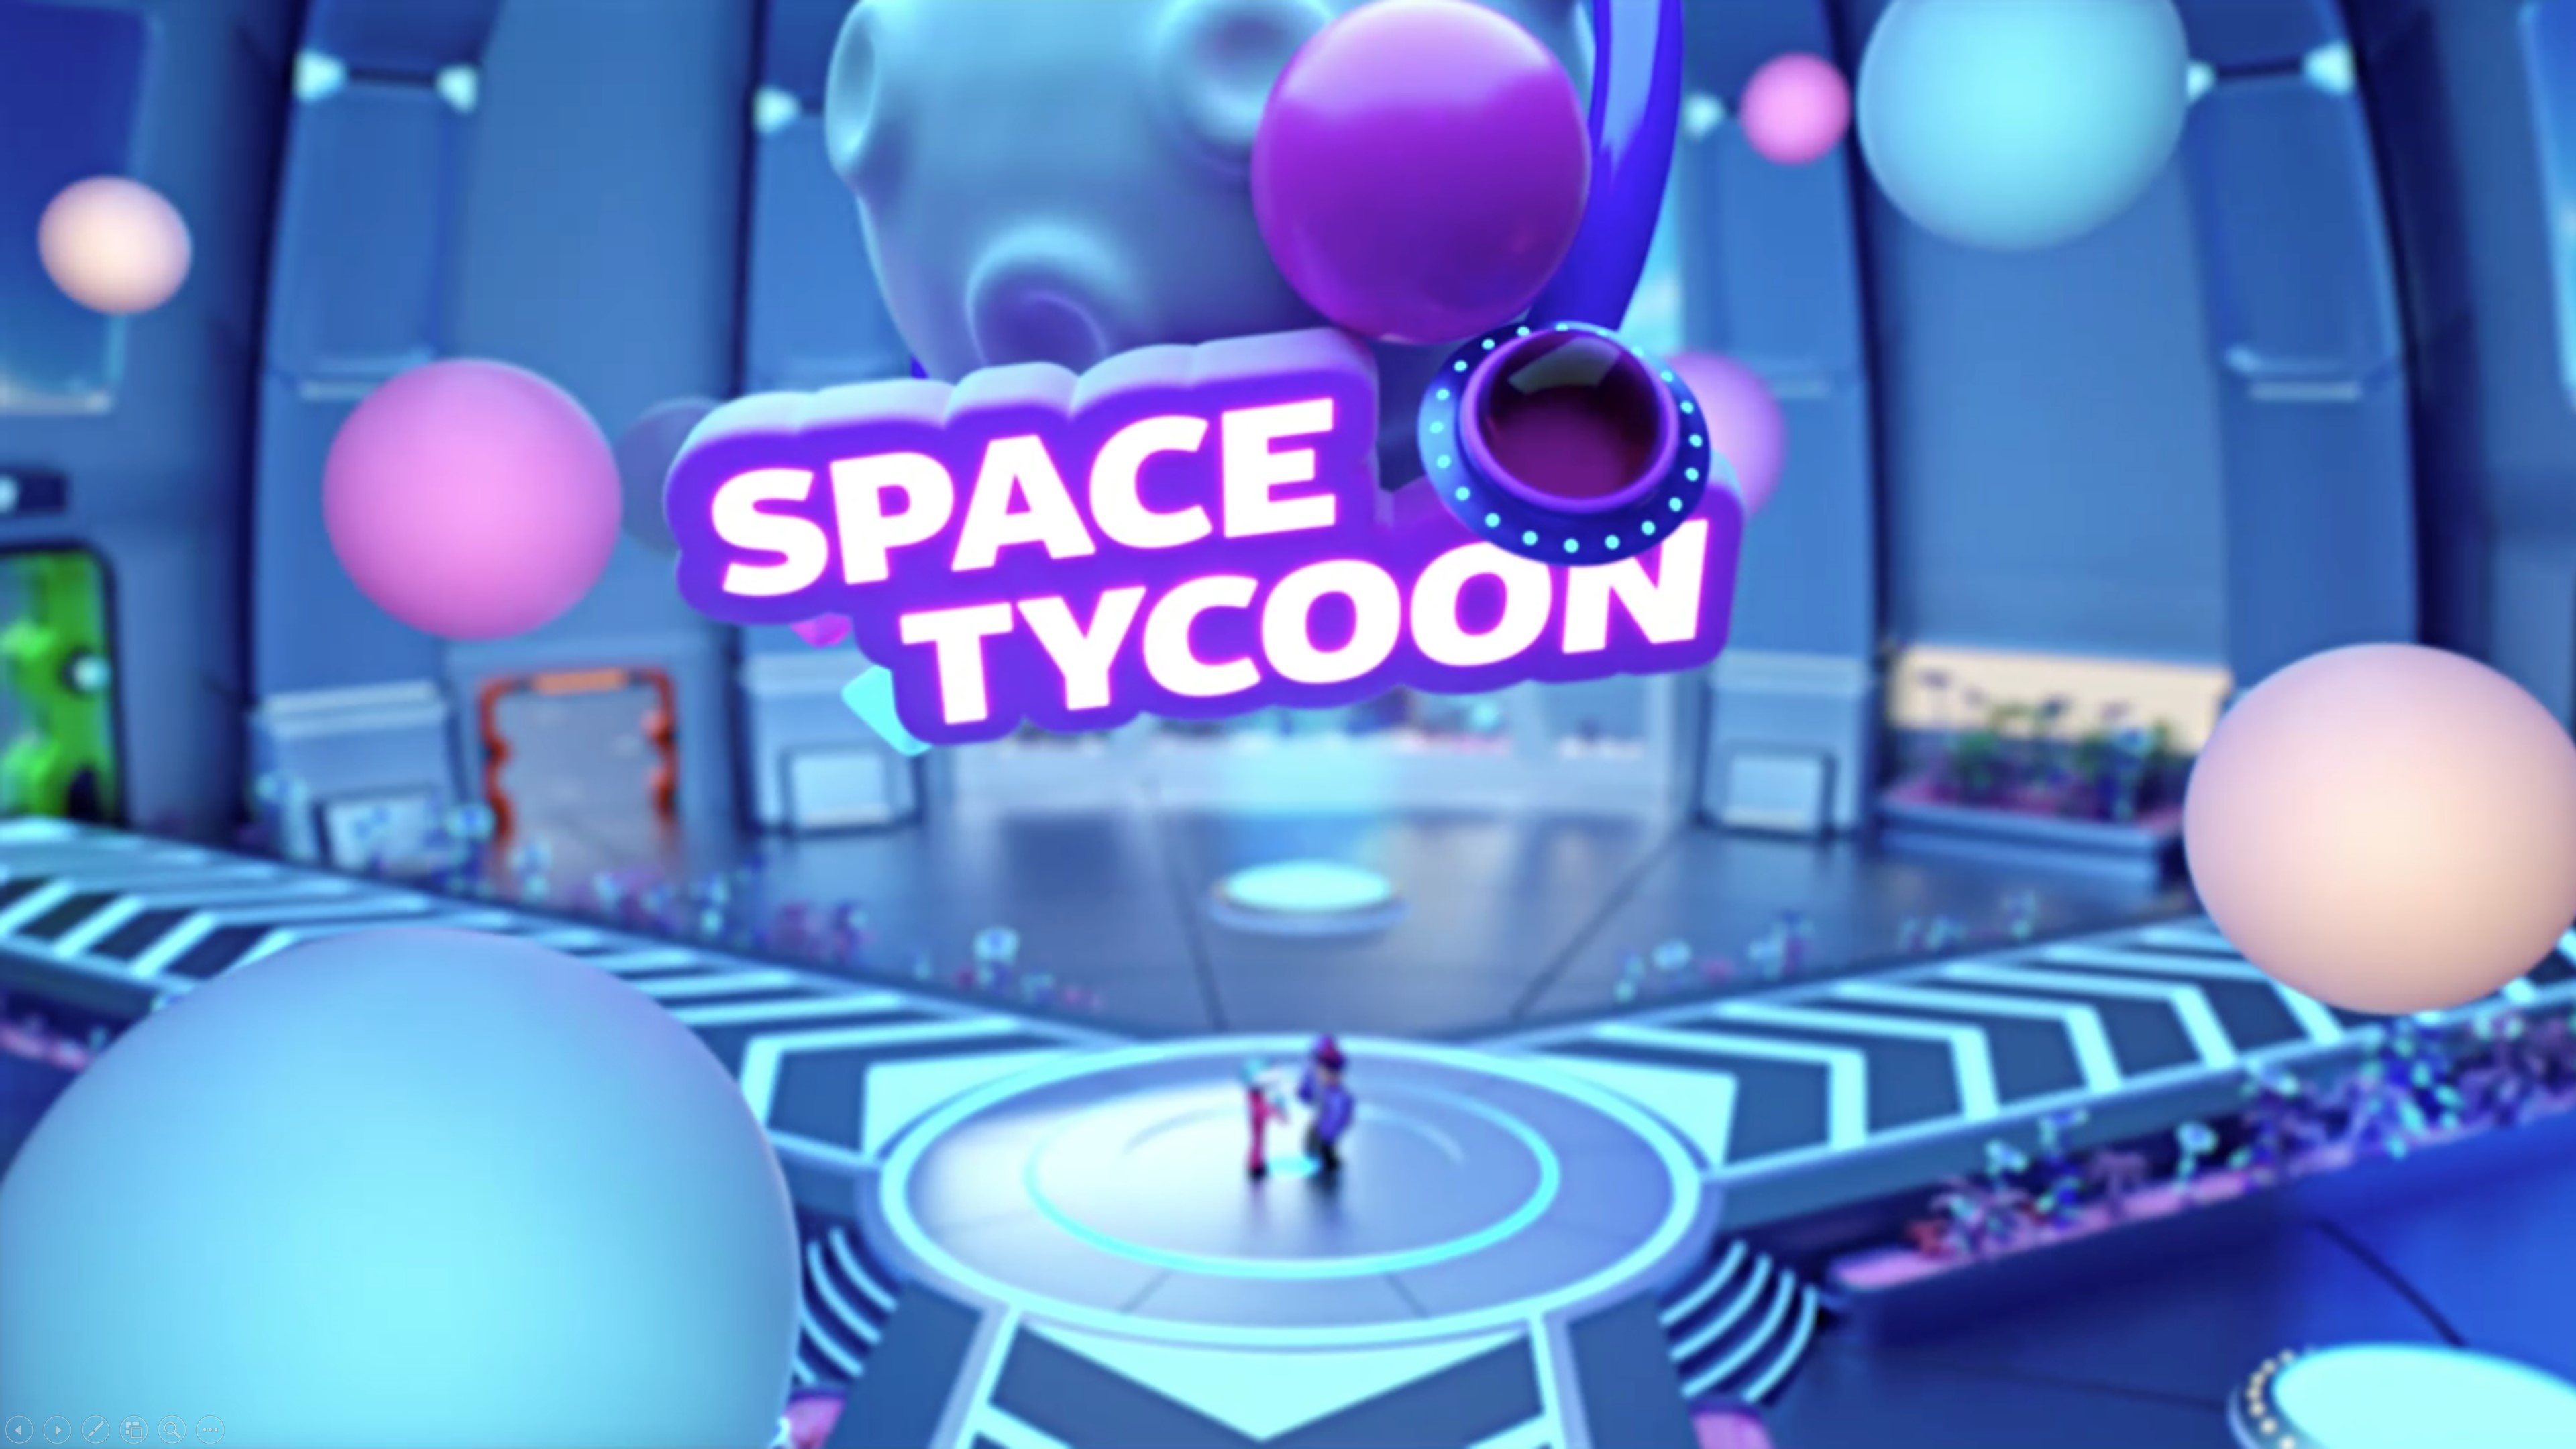 Space Tycoon memungkinkan pengguna makin kreatif (sumber gambar: Samsung)